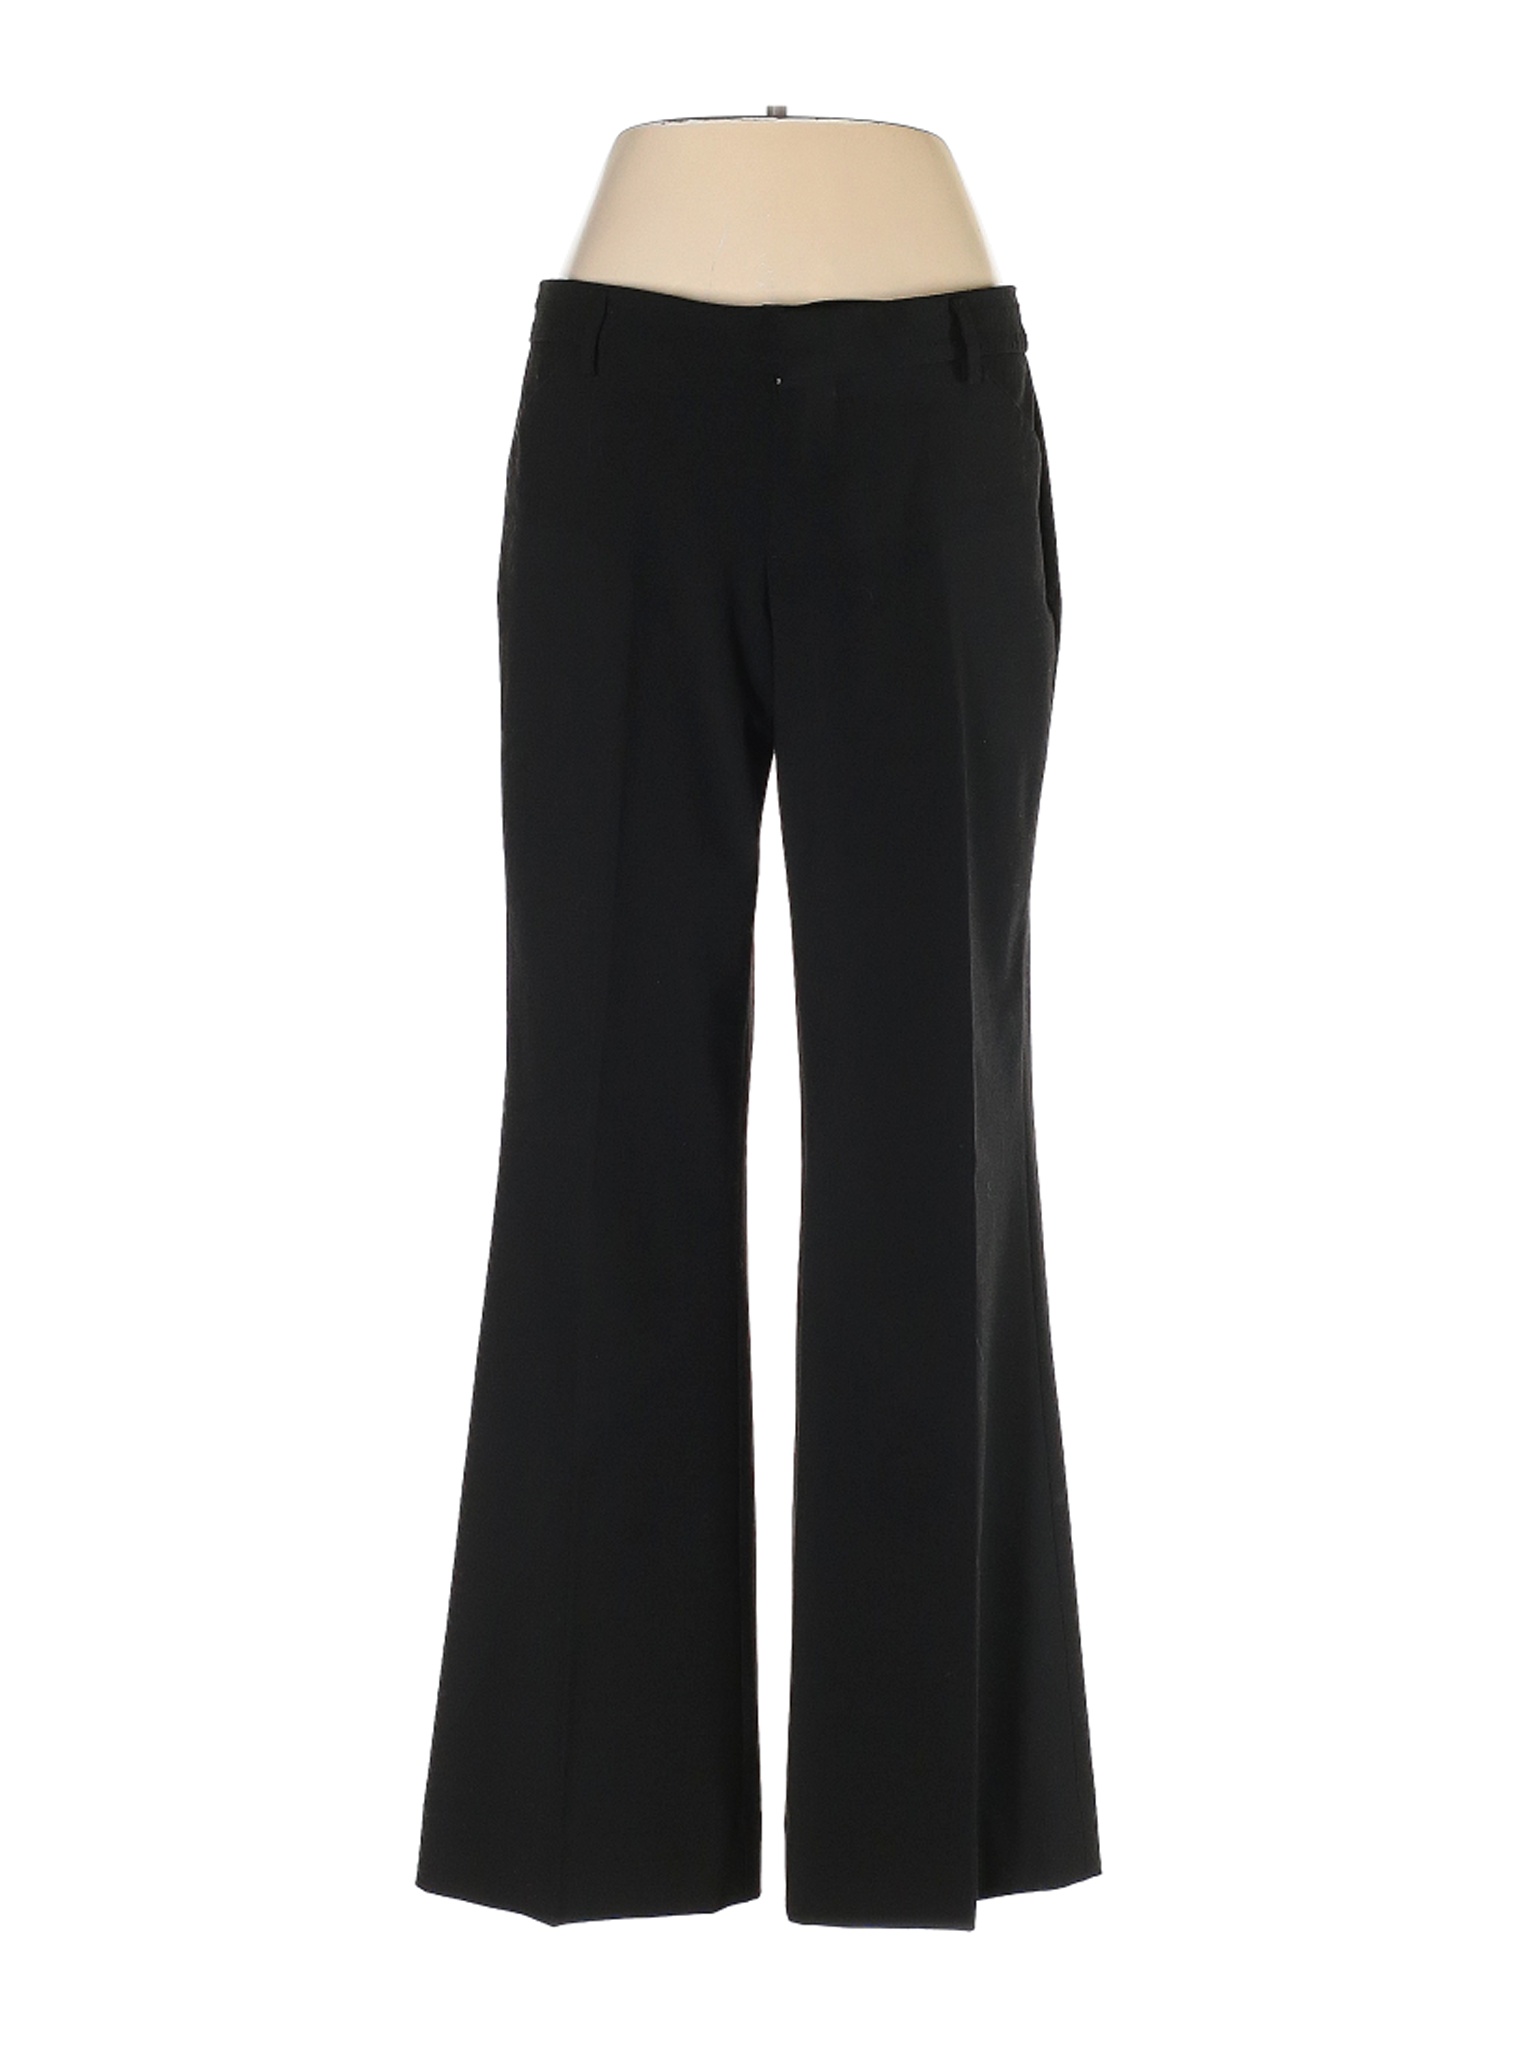 Gap Women Black Dress Pants 4 | eBay